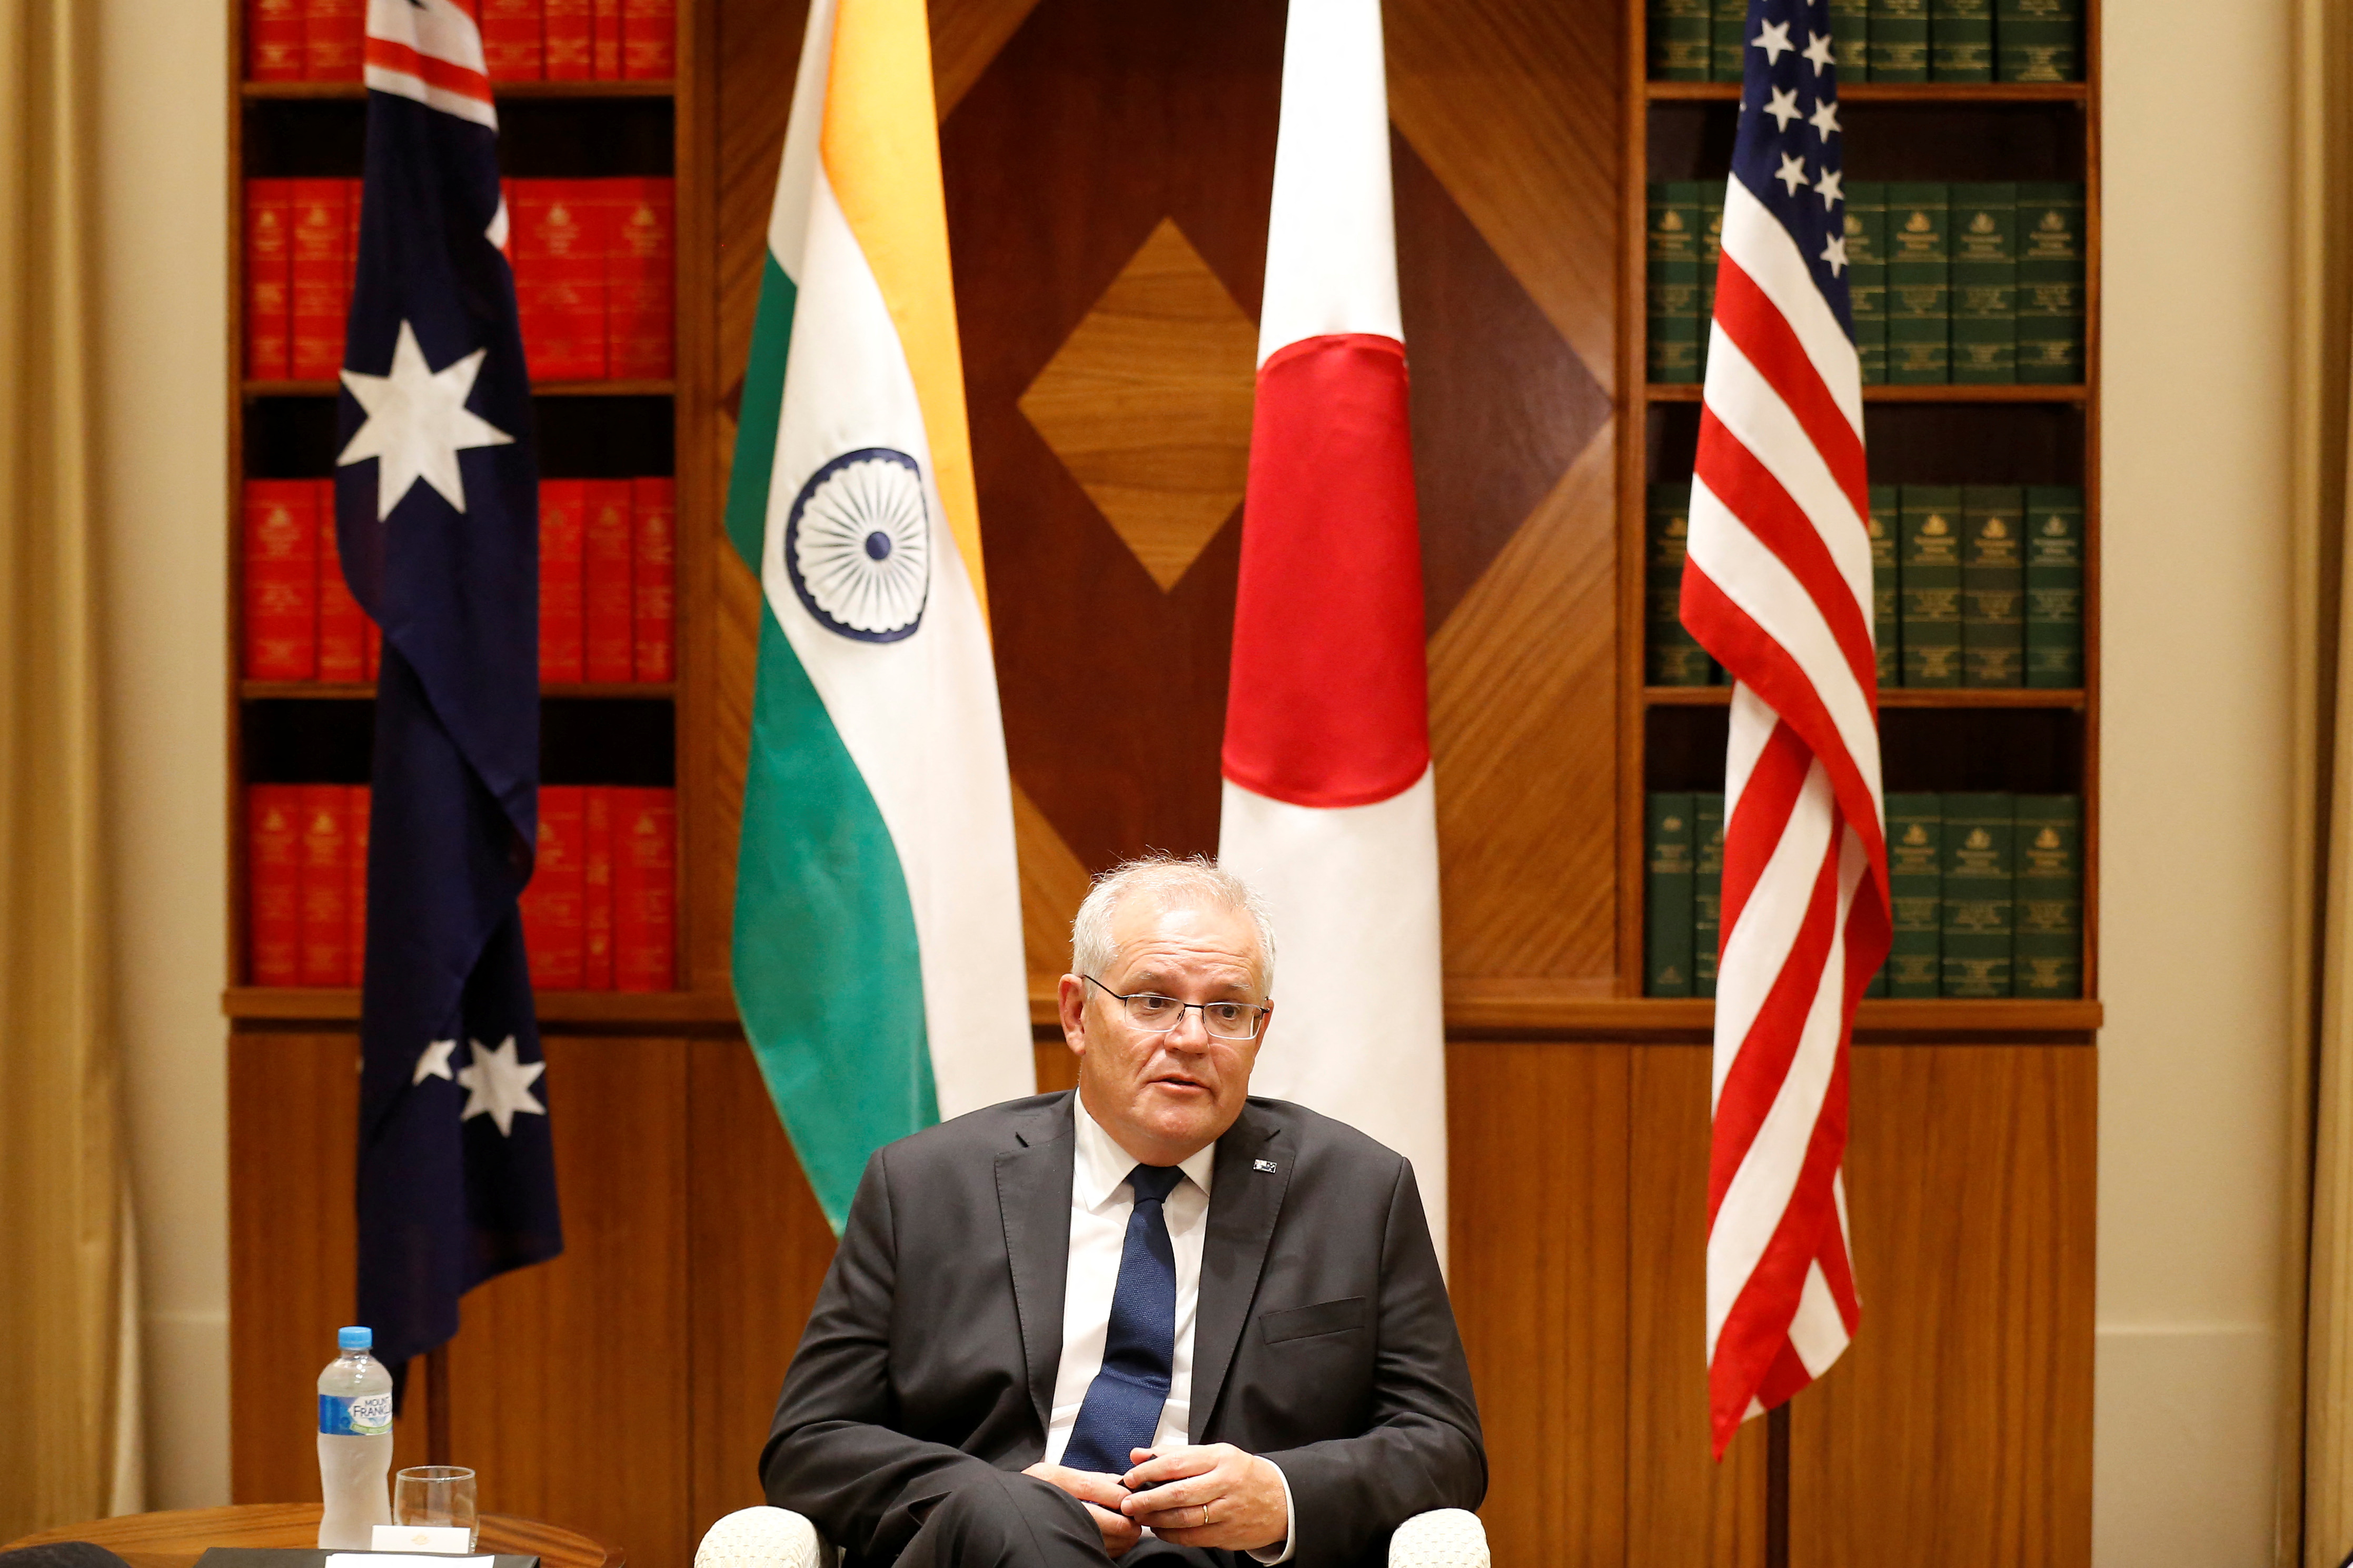 El primer ministro australiano, Scott Morrison, habla con los medios de comunicación en la Oficina del Parlamento de la Commonwealth en Melbourne, Melbourne, Australia, el 11 de febrero de 2022. Darrian Traynor/Pool vía REUTERS